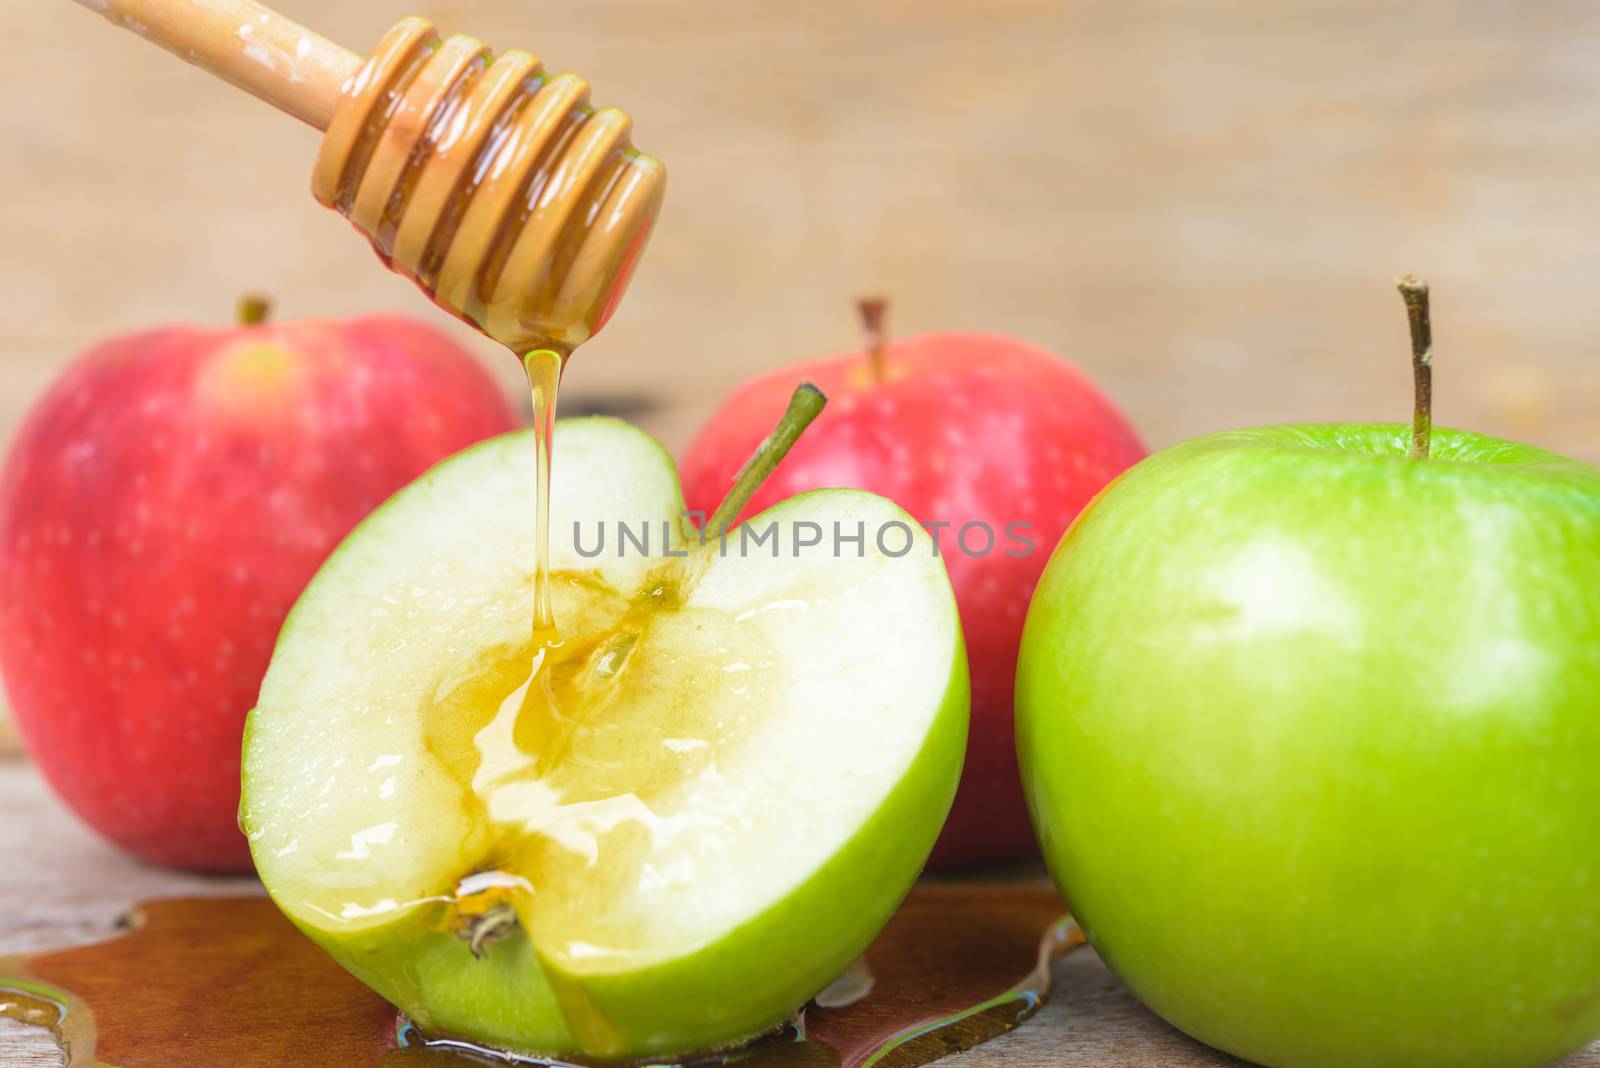 Jewish holiday, Apple Rosh Hashanah, by Sorapop